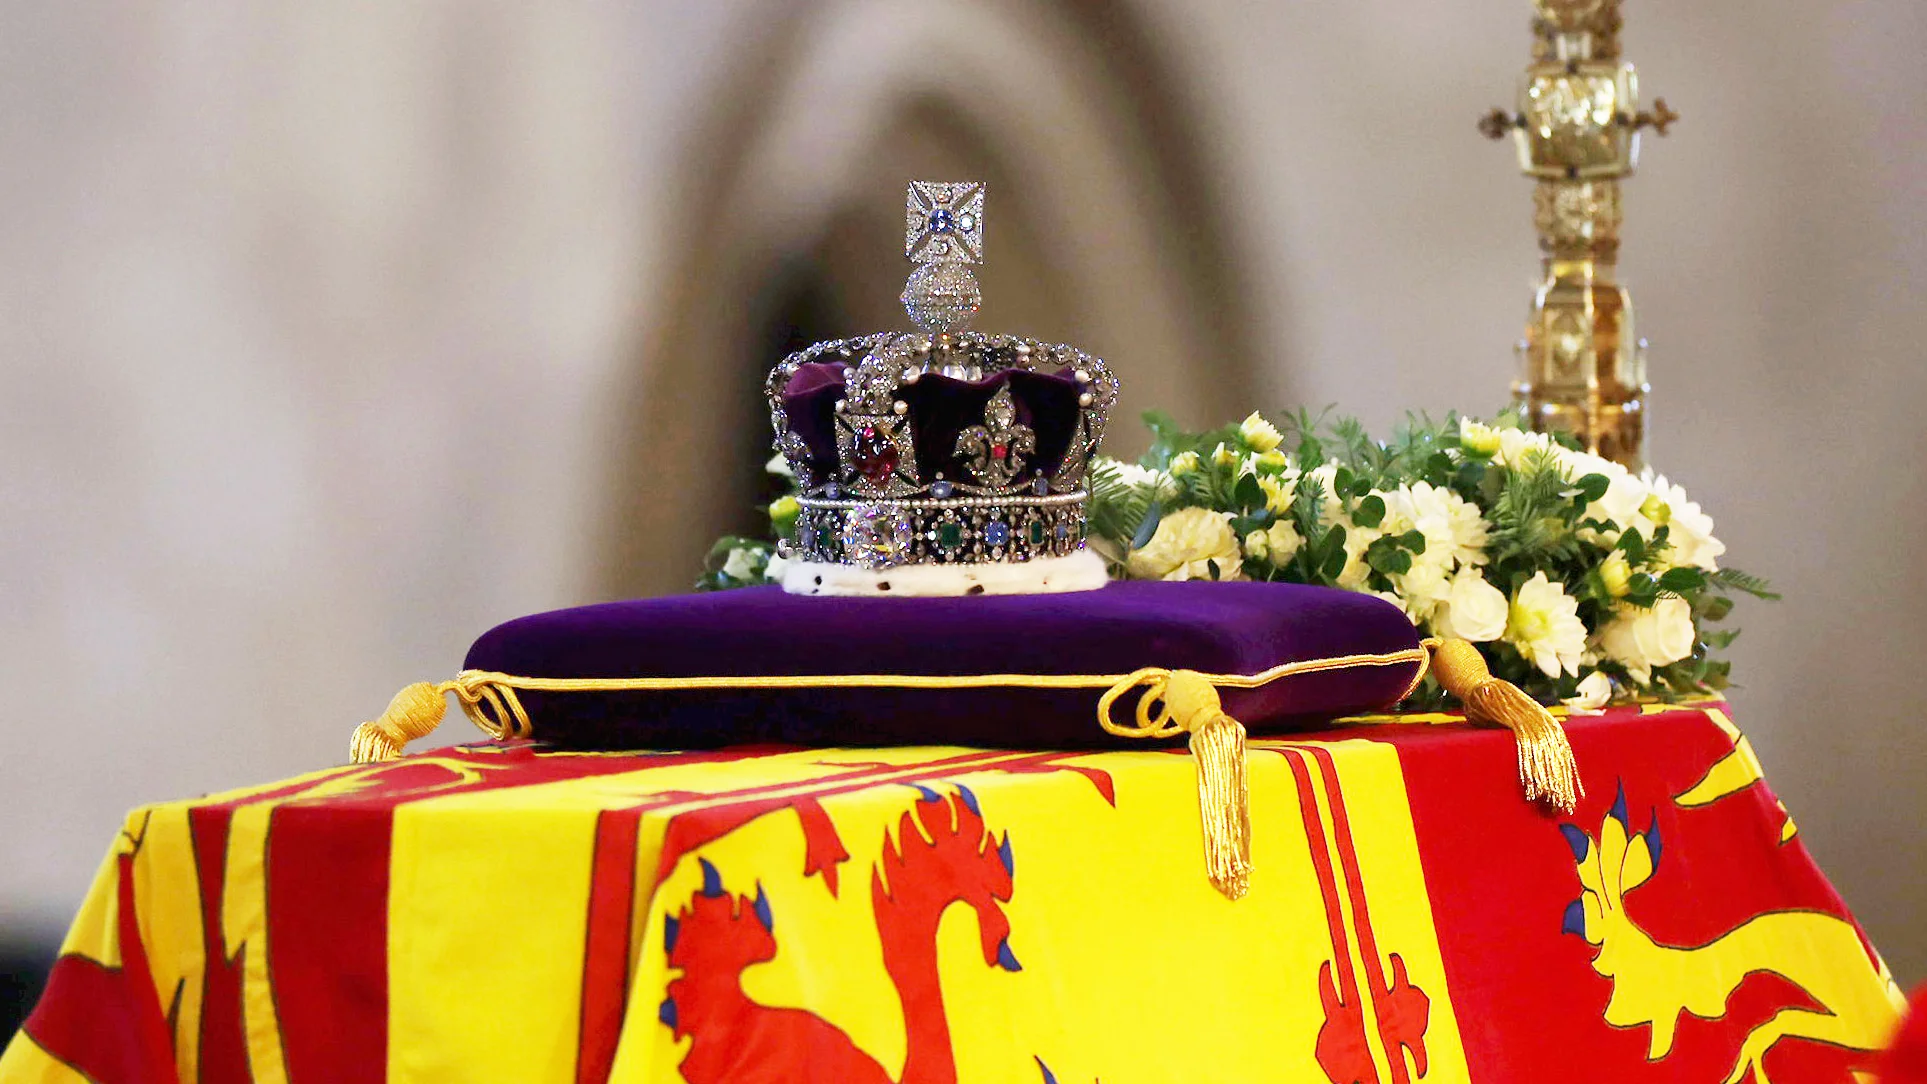 Κηδεία βασίλισσας Ελισάβετ: Αναλυτικά το πρόγραμμα και η διαδικασία που θα ακολουθηθεί αύριο Δευτέρα